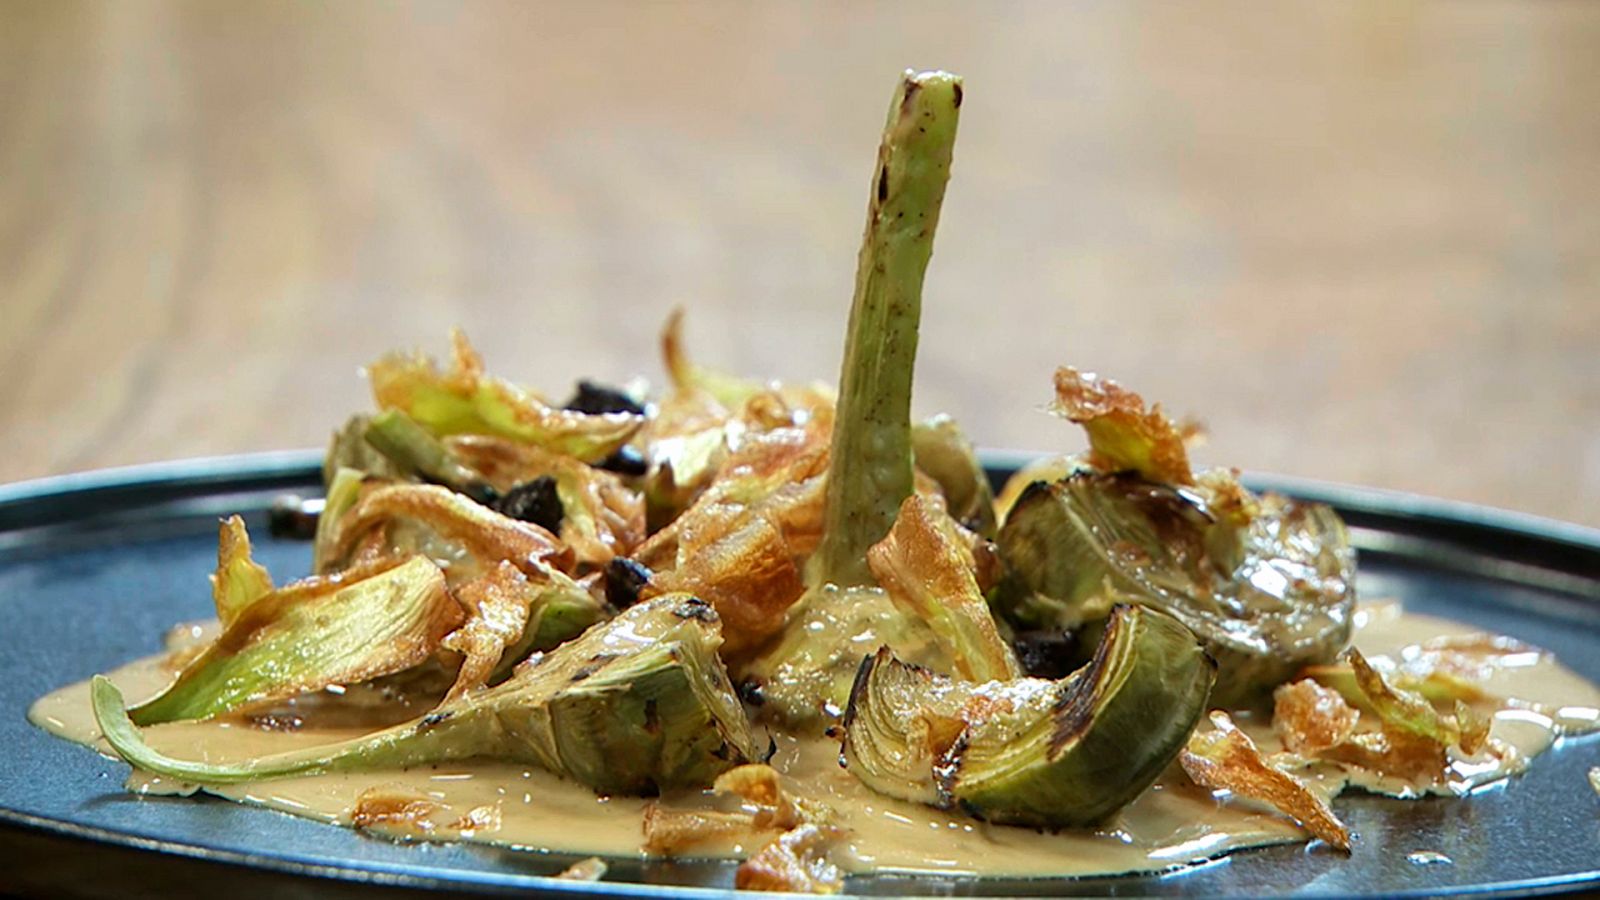 Torres en la cocina - Alcachofas con chantilly de foie